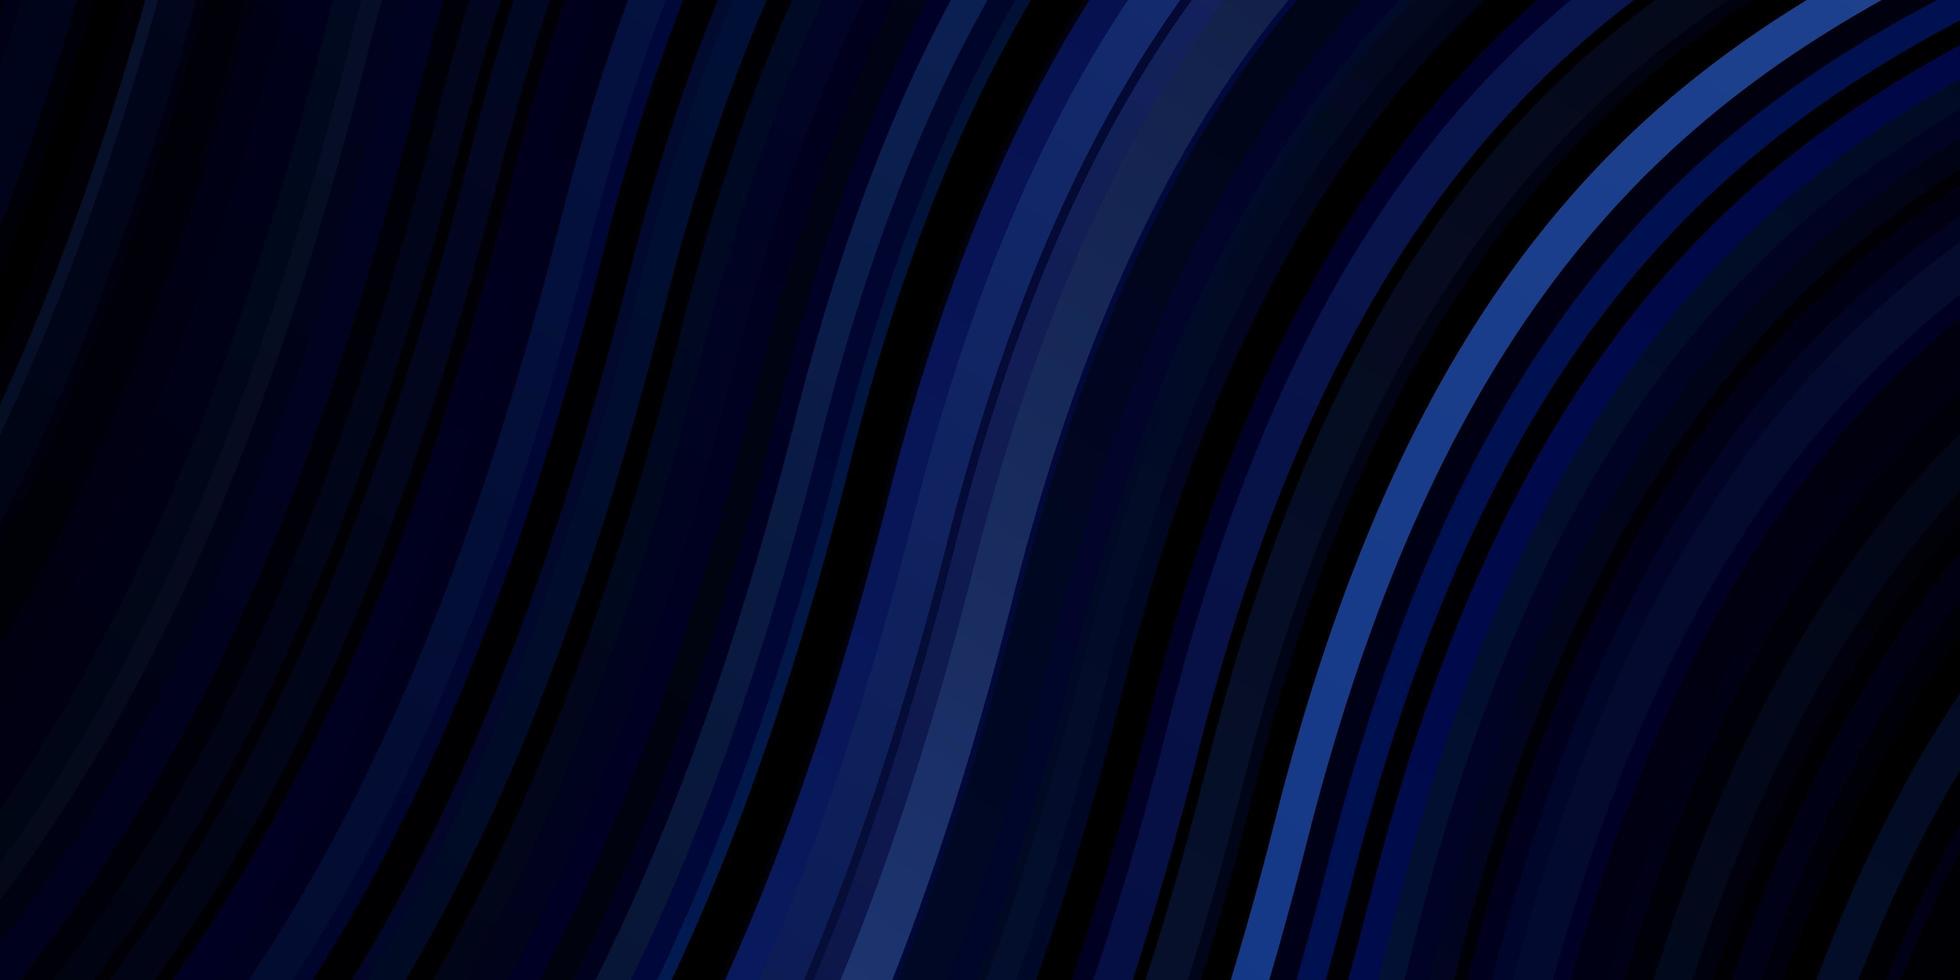 sfondo vettoriale azzurro con linee curve.